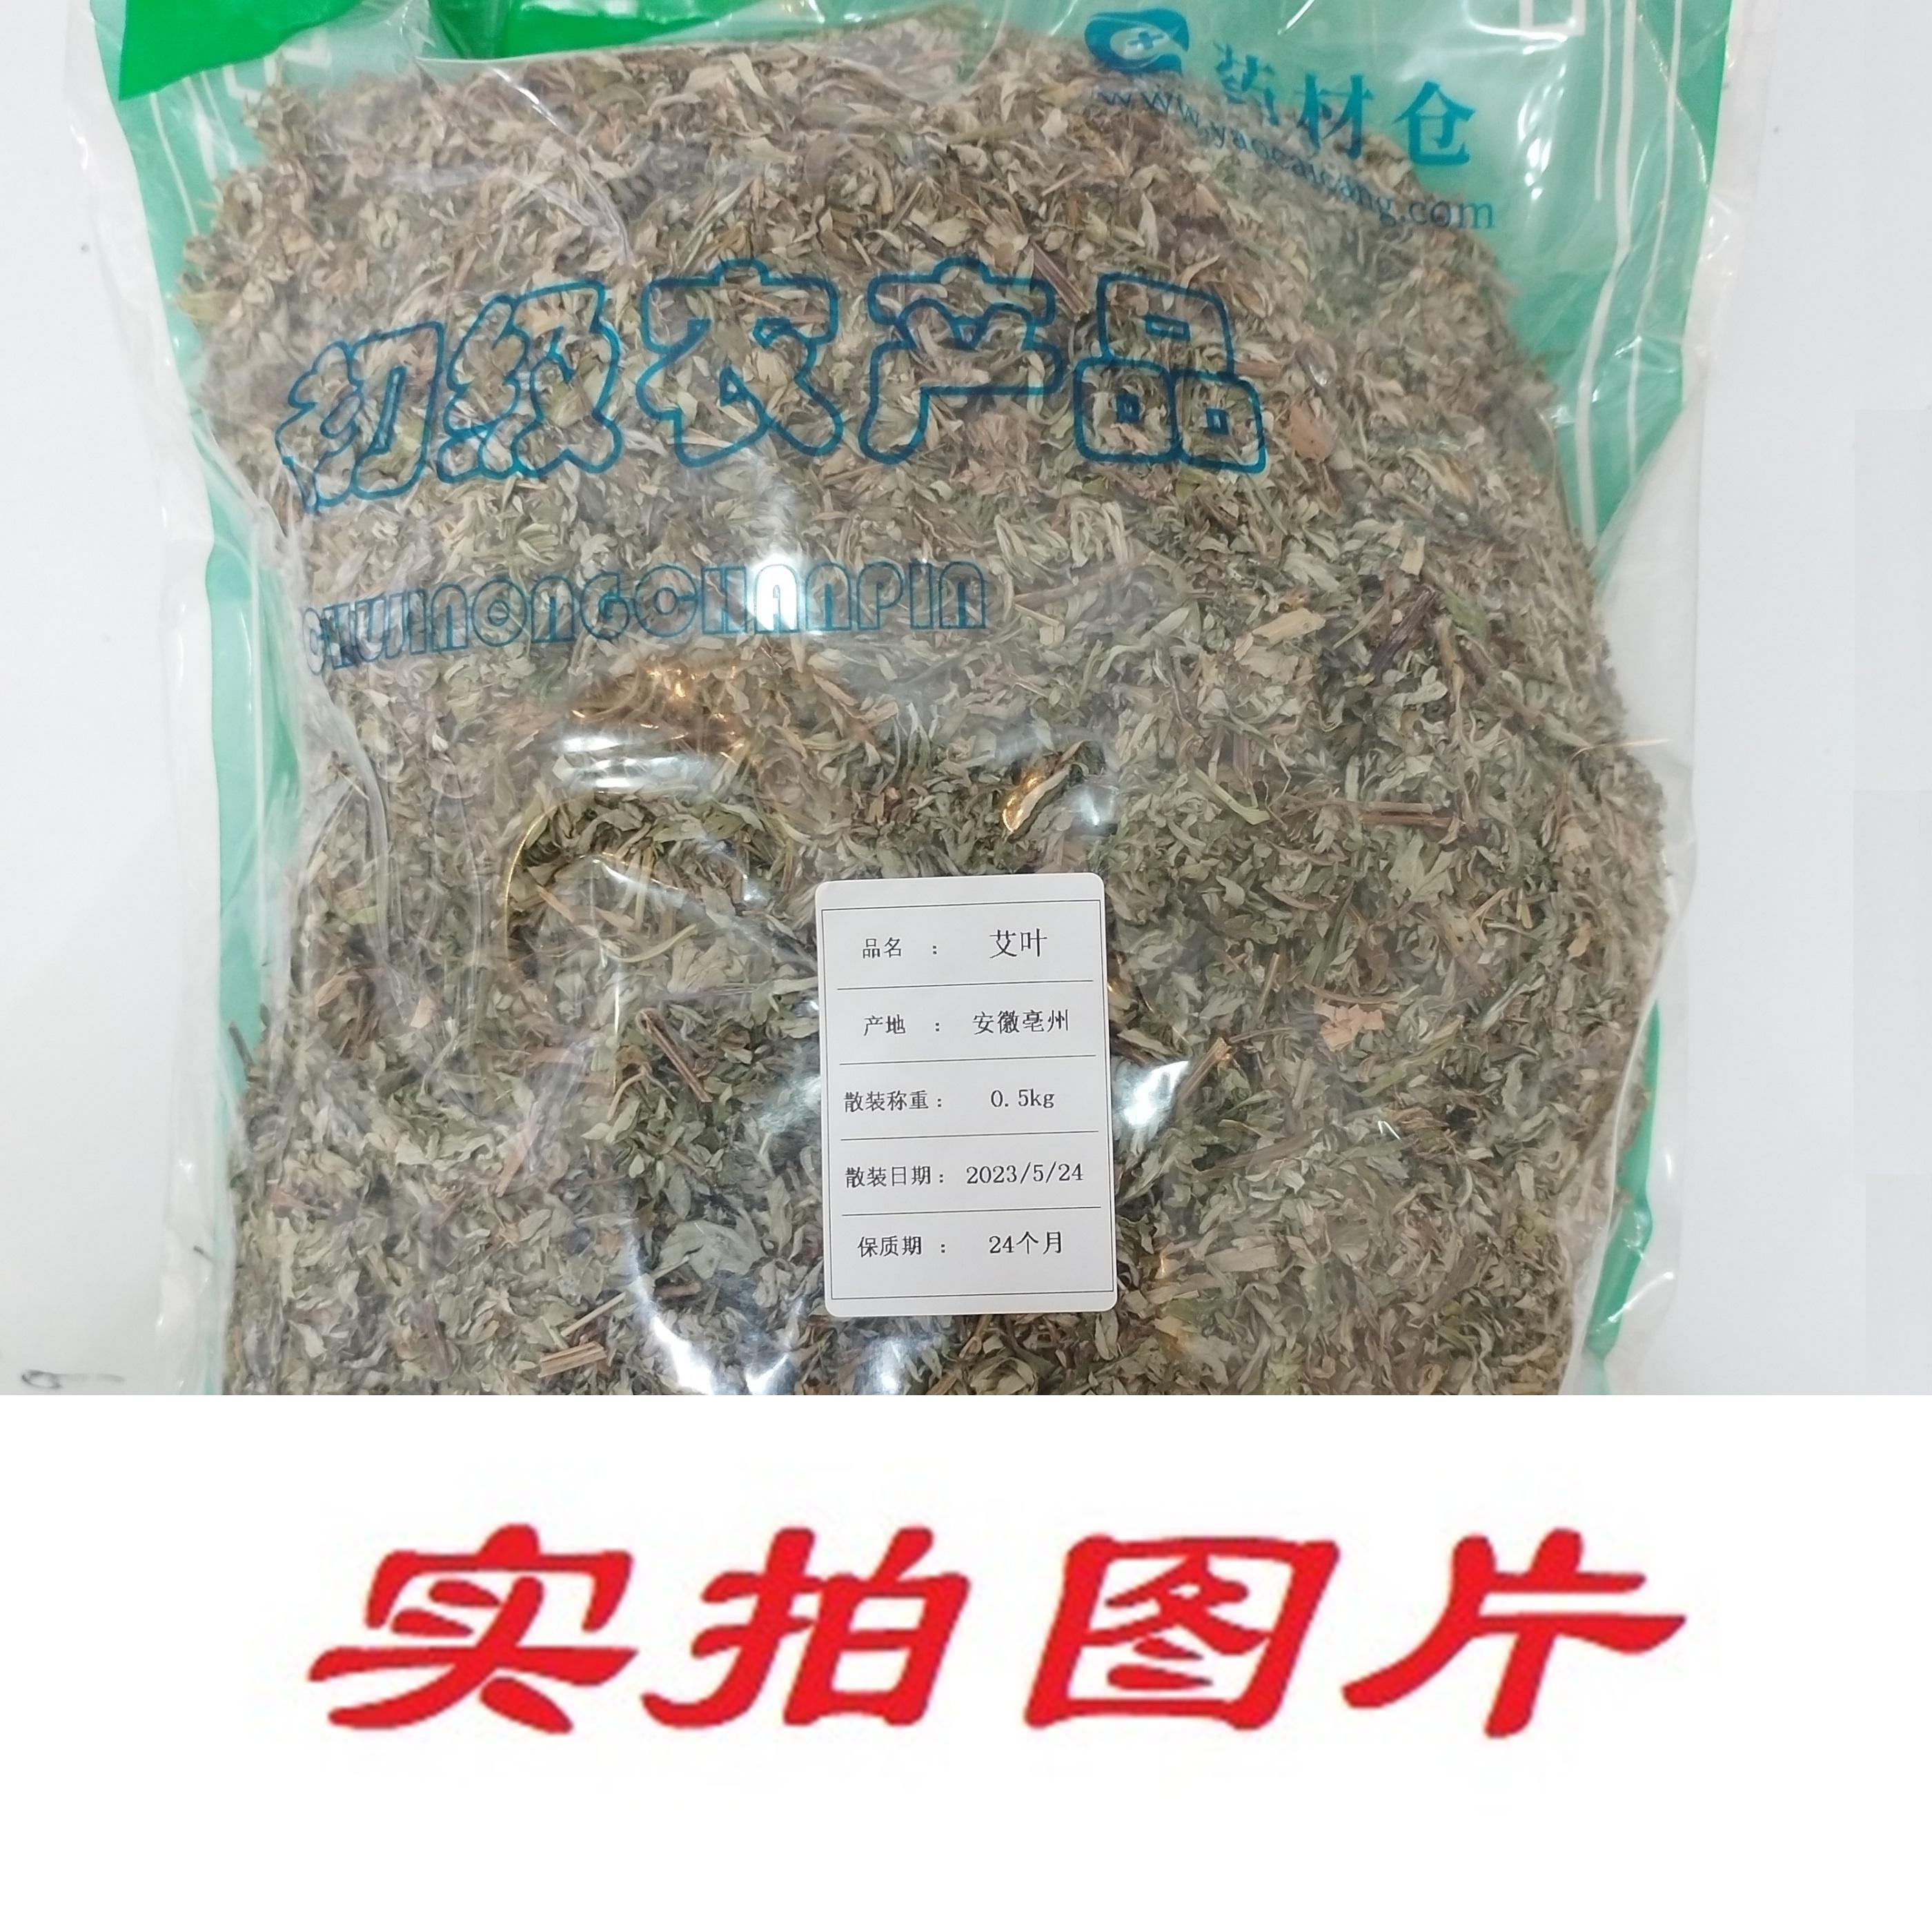 【】艾叶0.5kg-农副产品